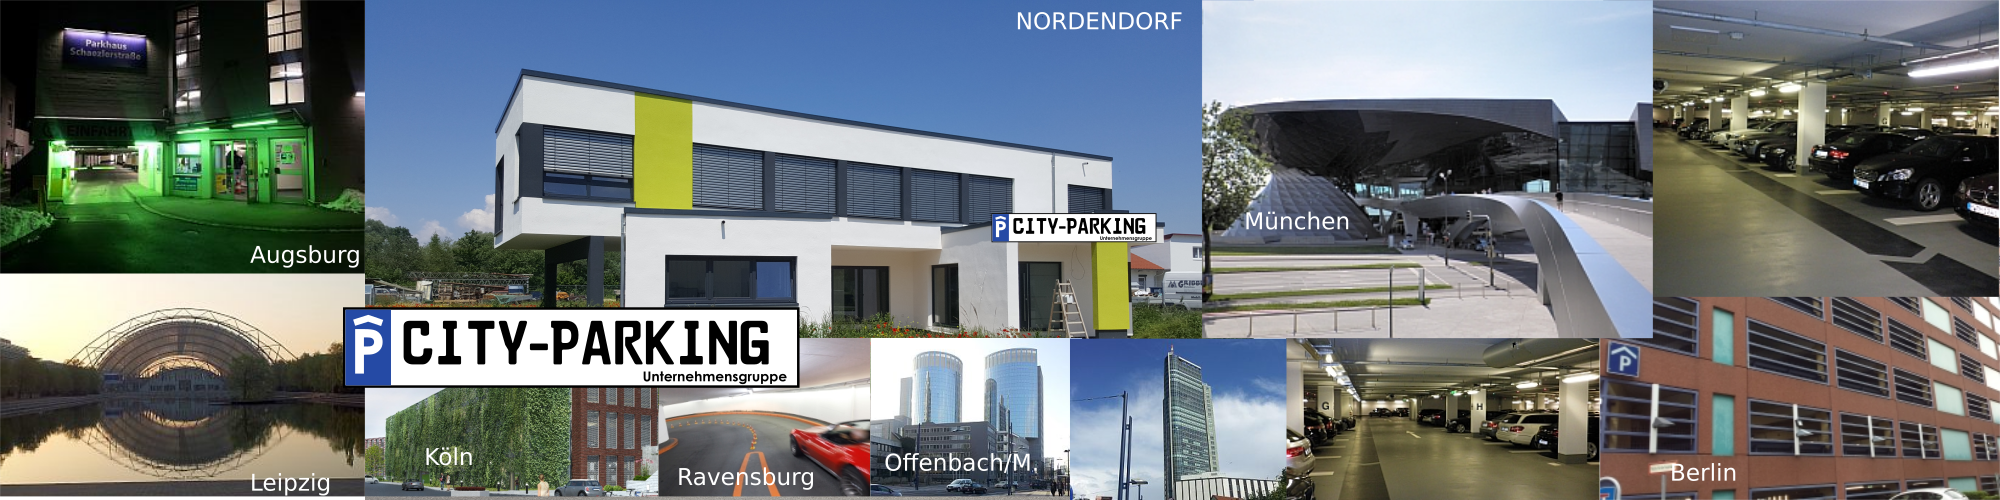 city-parking Deutschland GmbH & Co. KG